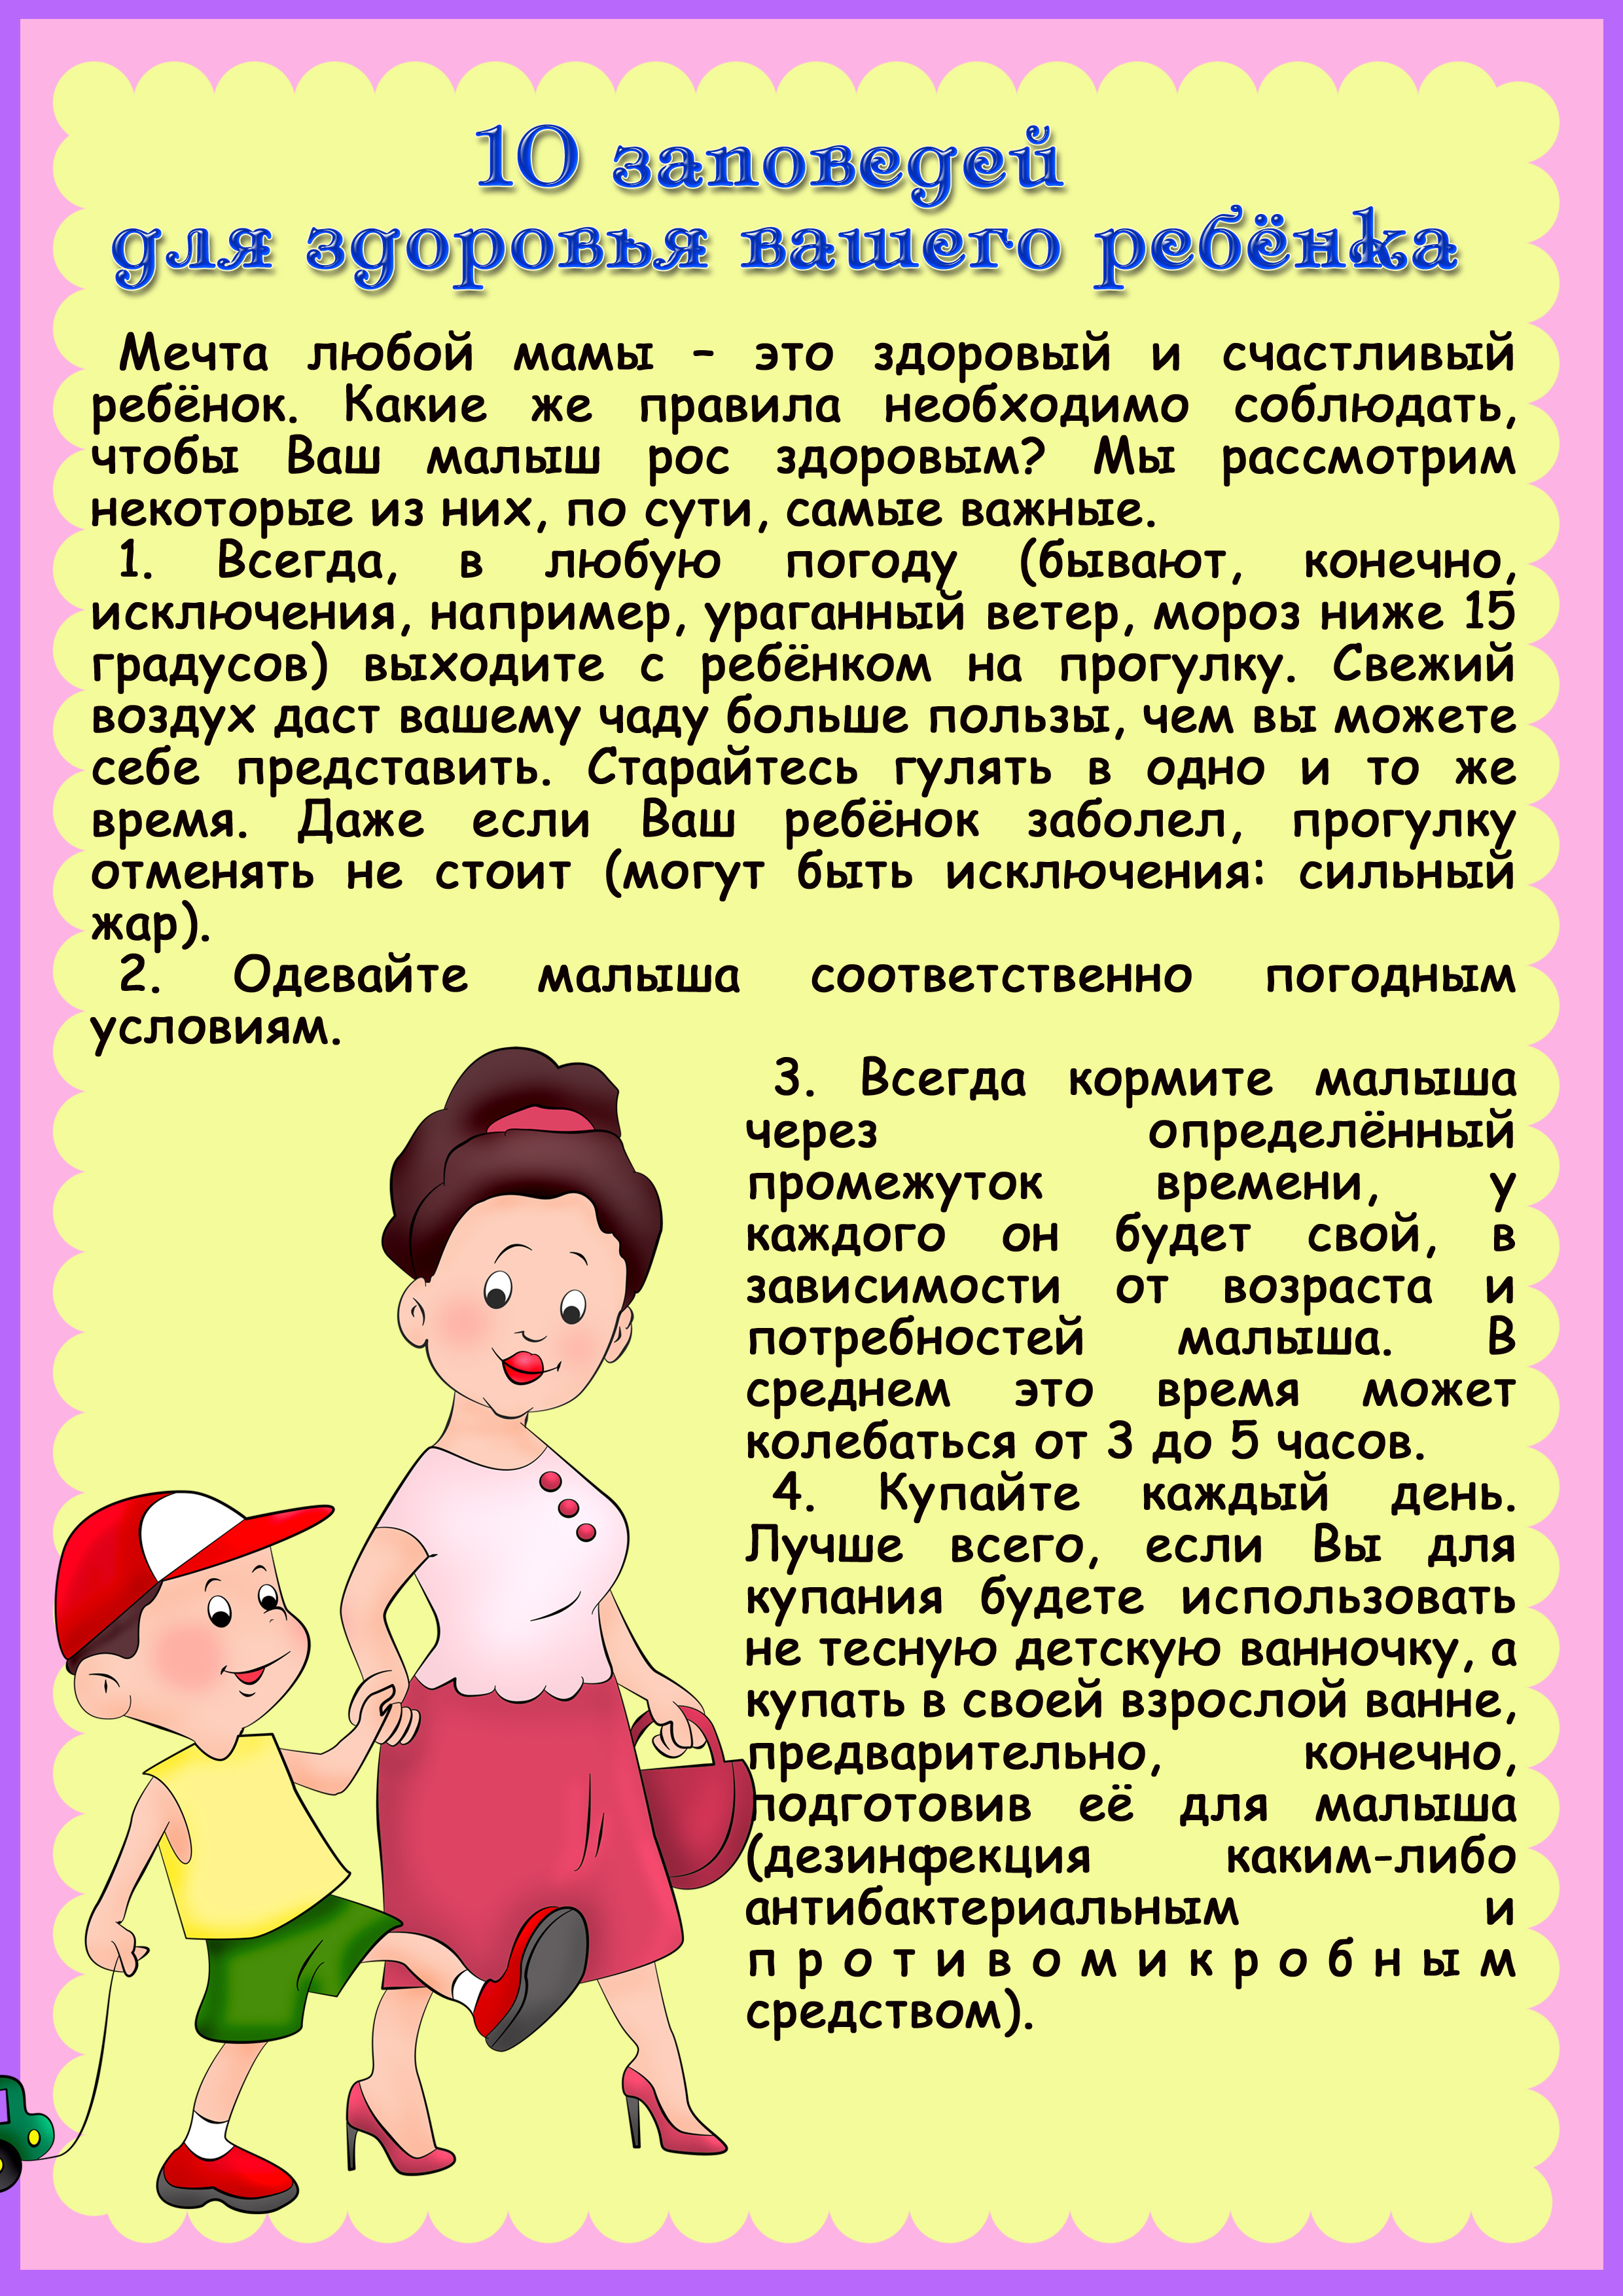 Чем важен праздник день защиты детей 5 предложений - pozdravih.ru - все о праздниках и празднованиях